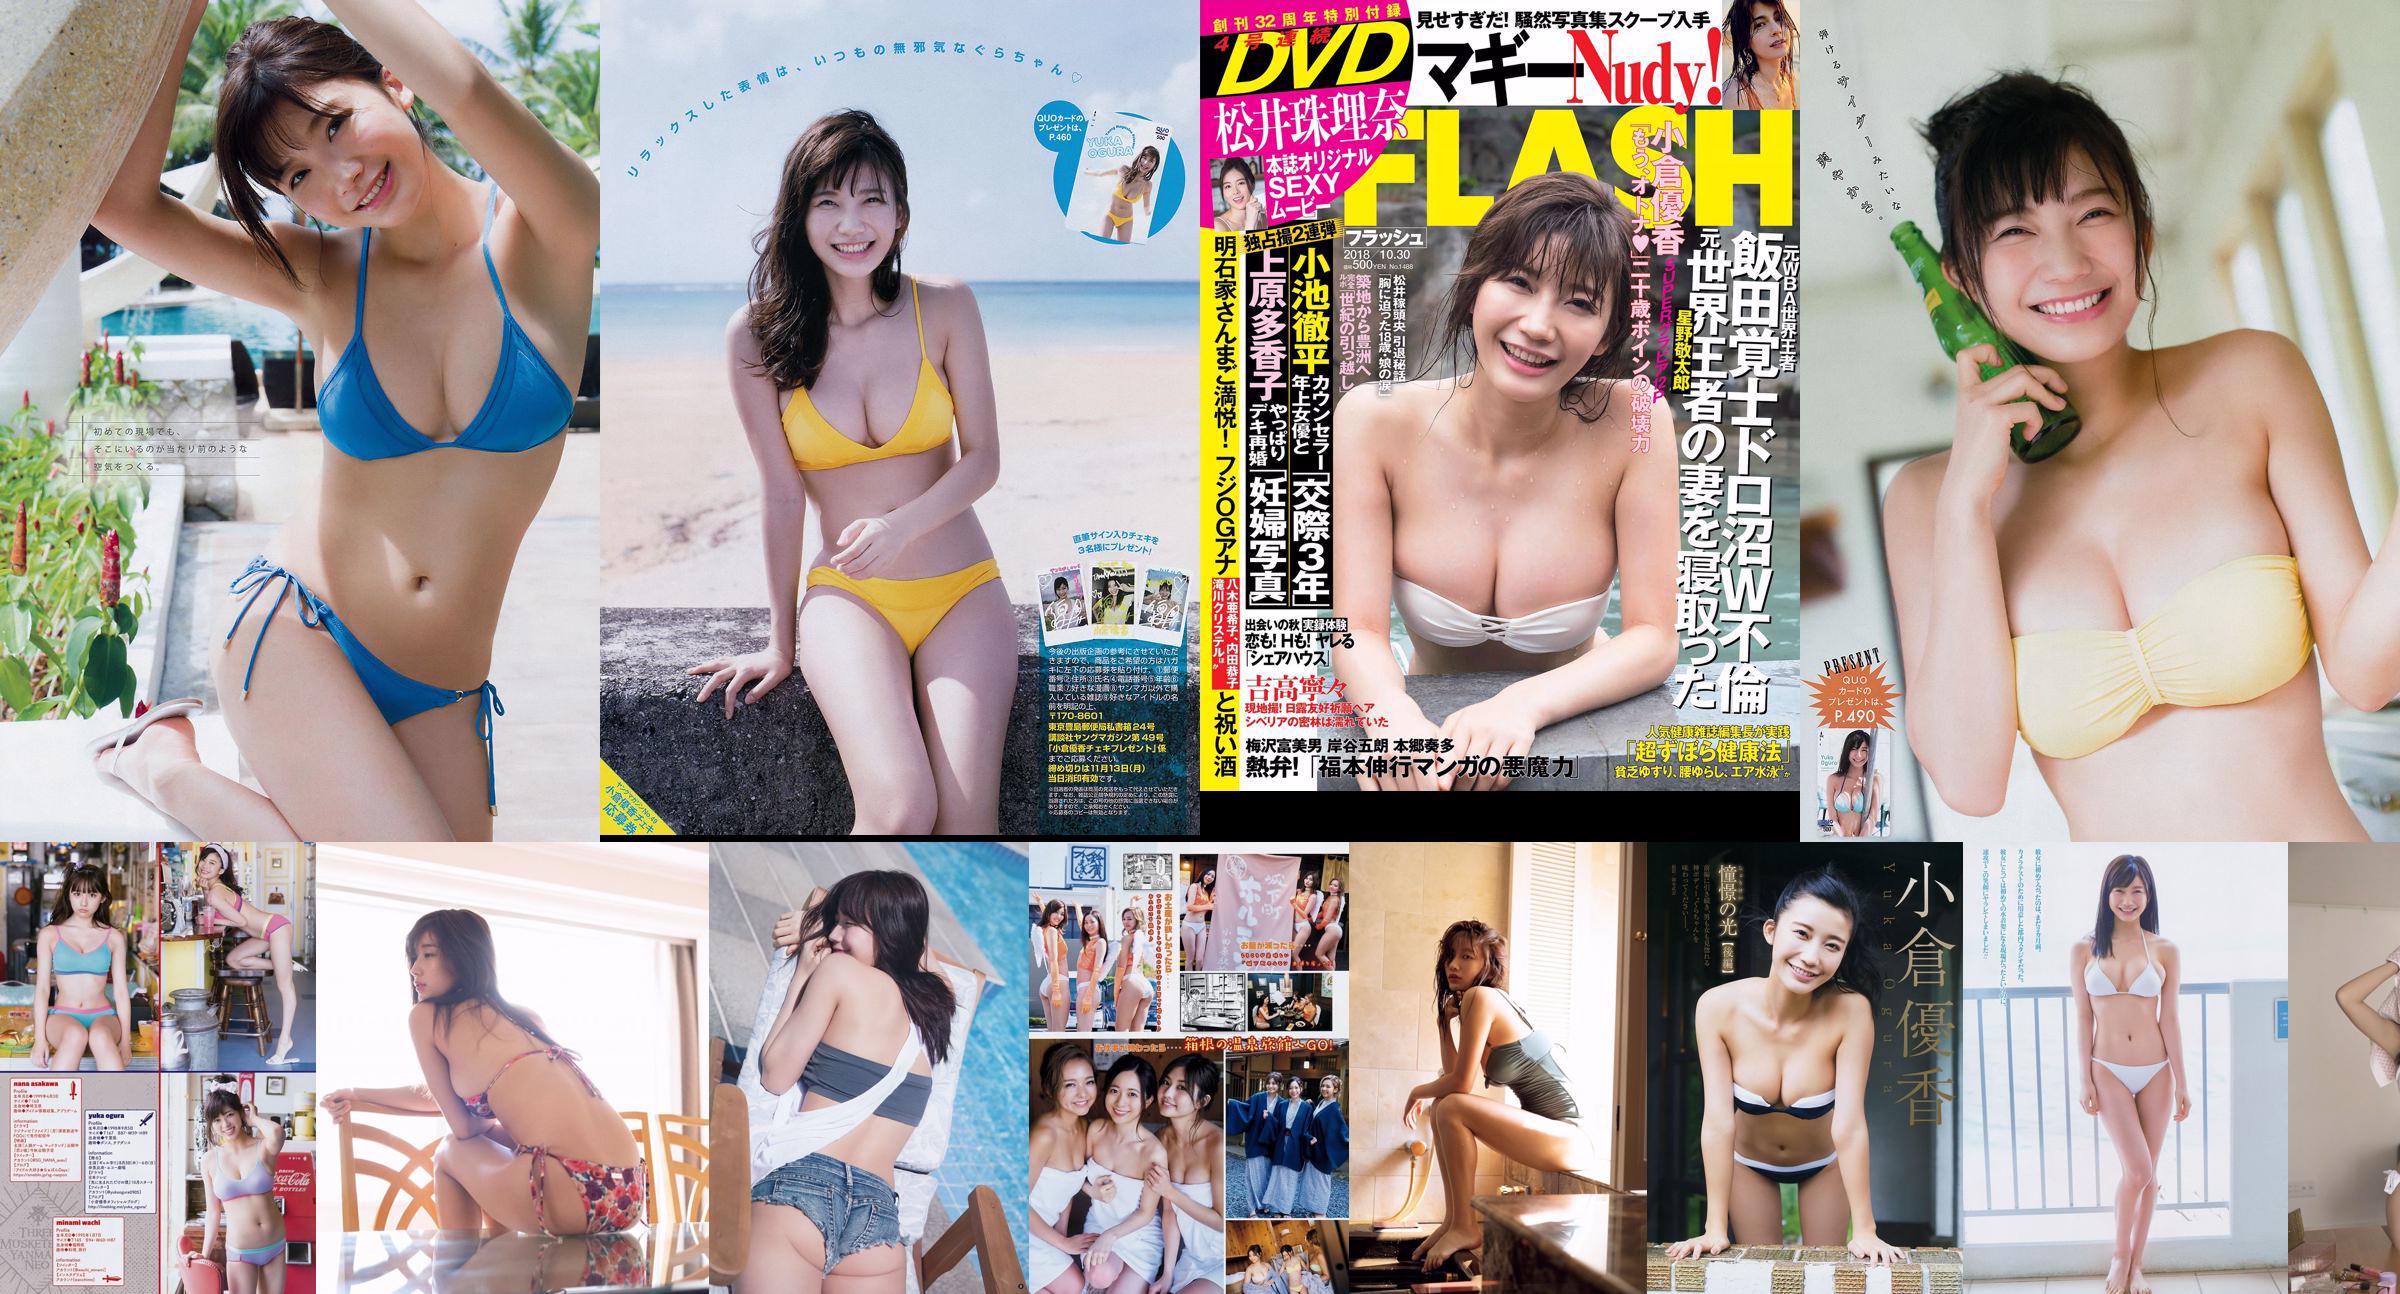 KOM_I Yuka Ogura Haruka Koizumi Mayu Yoshioka Sayaka Tomaru Mina Yamakawa Natsuki Kawamura Keyakizaka46 [Weekly Playboy] 2018 No.27 Photo No.1d725f Pagina 1